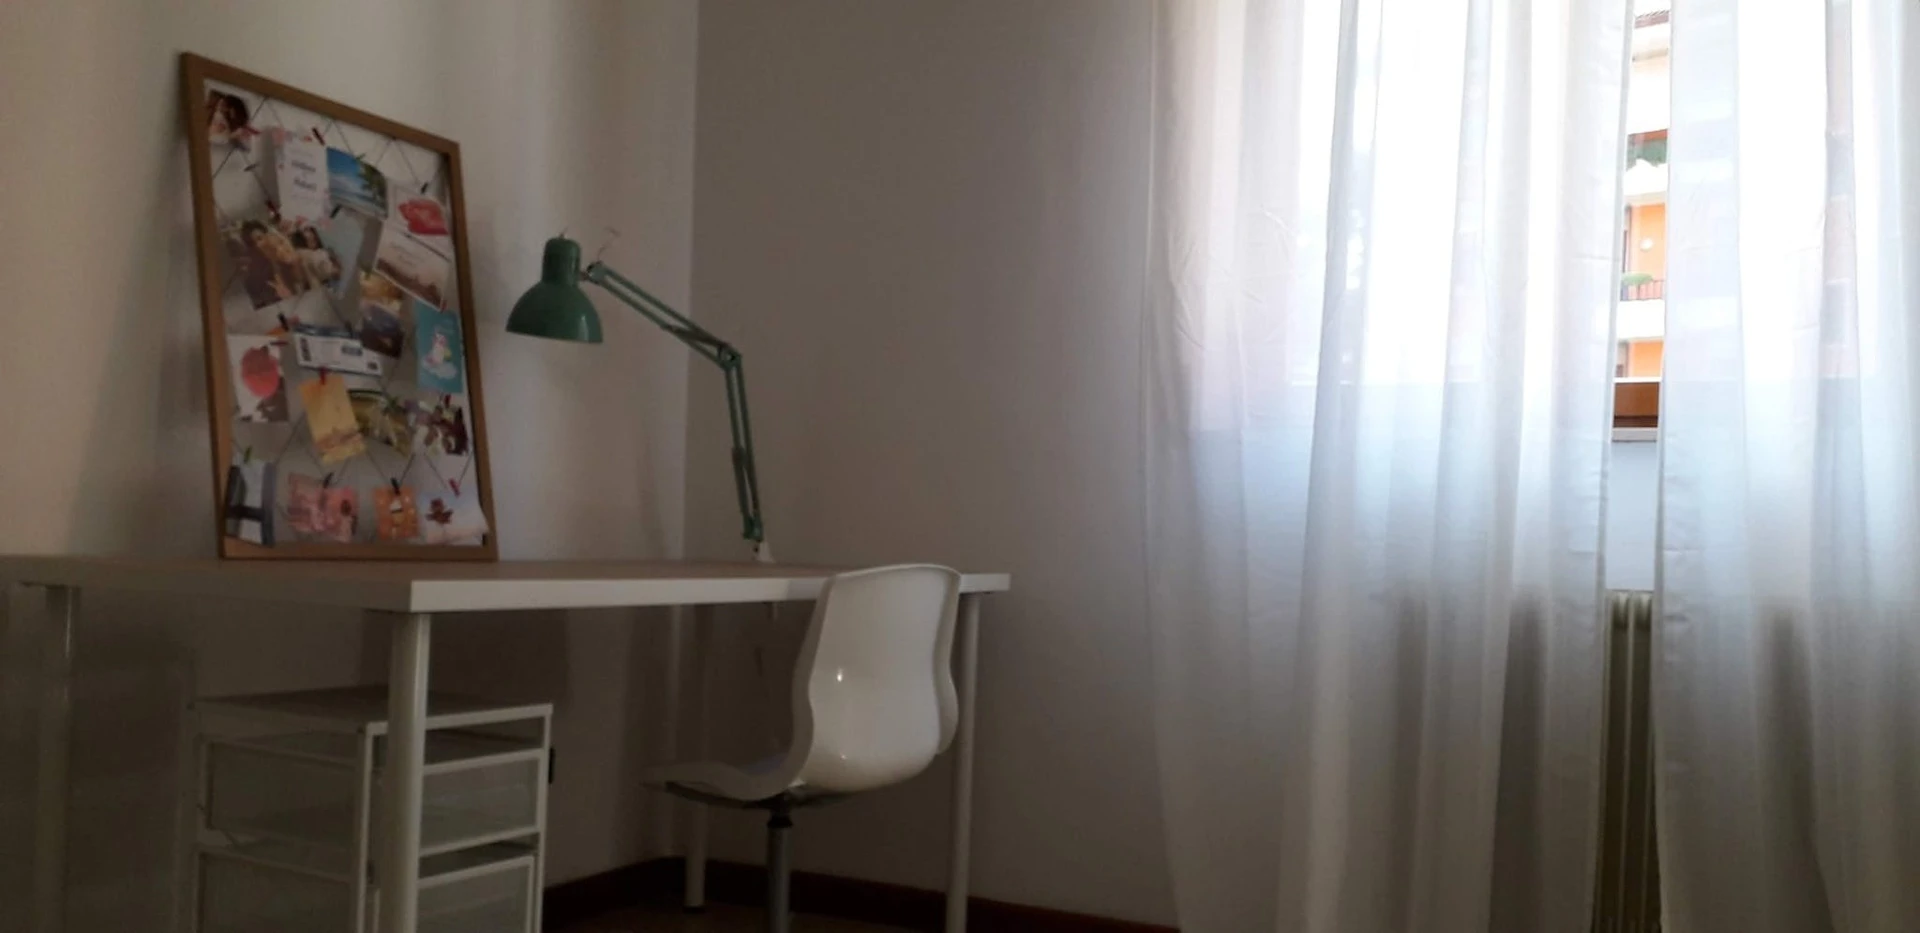 Zimmer mit Doppelbett zu vermieten Vicenza